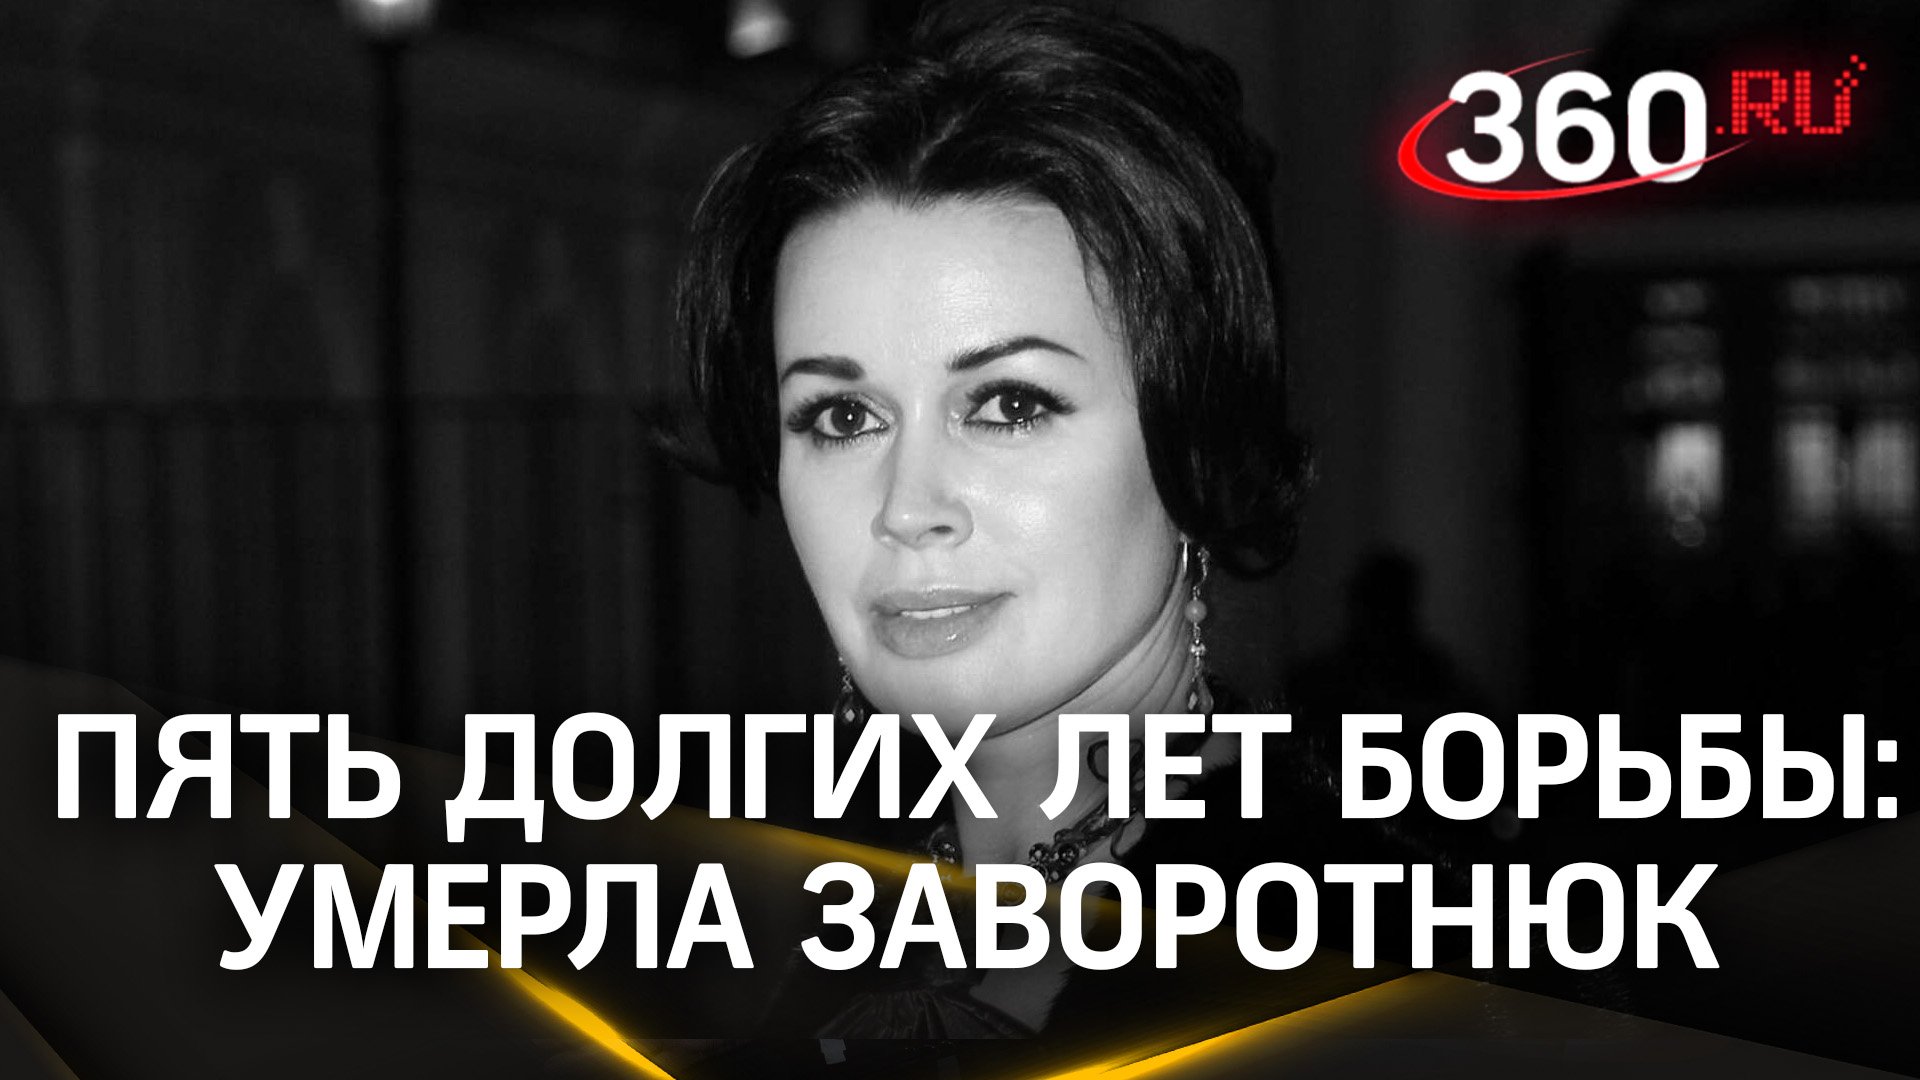 Не стало «прекрасной няни». Анастасия Заворотнюк умерла на 54 году жизни